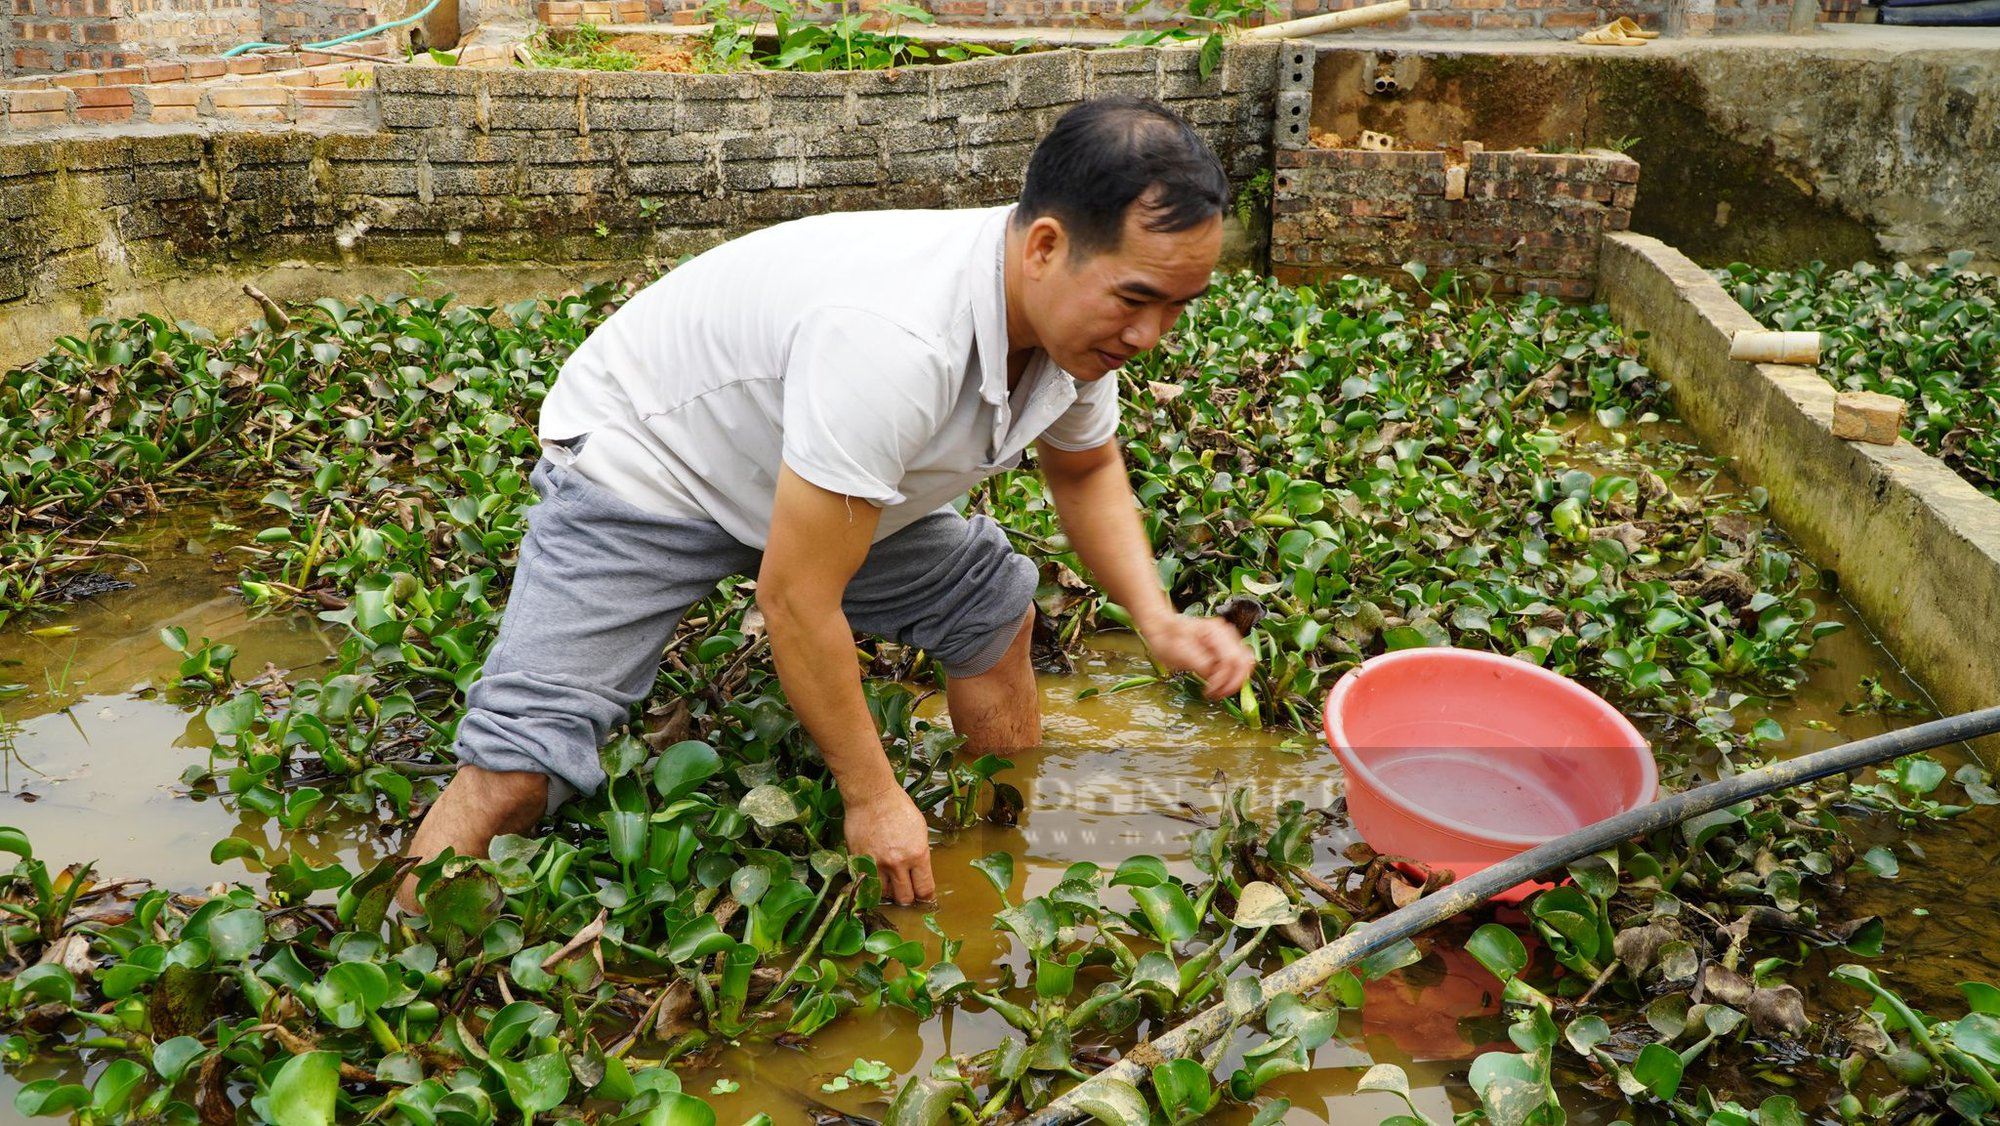 Nuôi ốc dưới nước, chồn nhung trên cạn, nông dân Hà Giang thu hàng trăm triện mỗi năm - Ảnh 1.